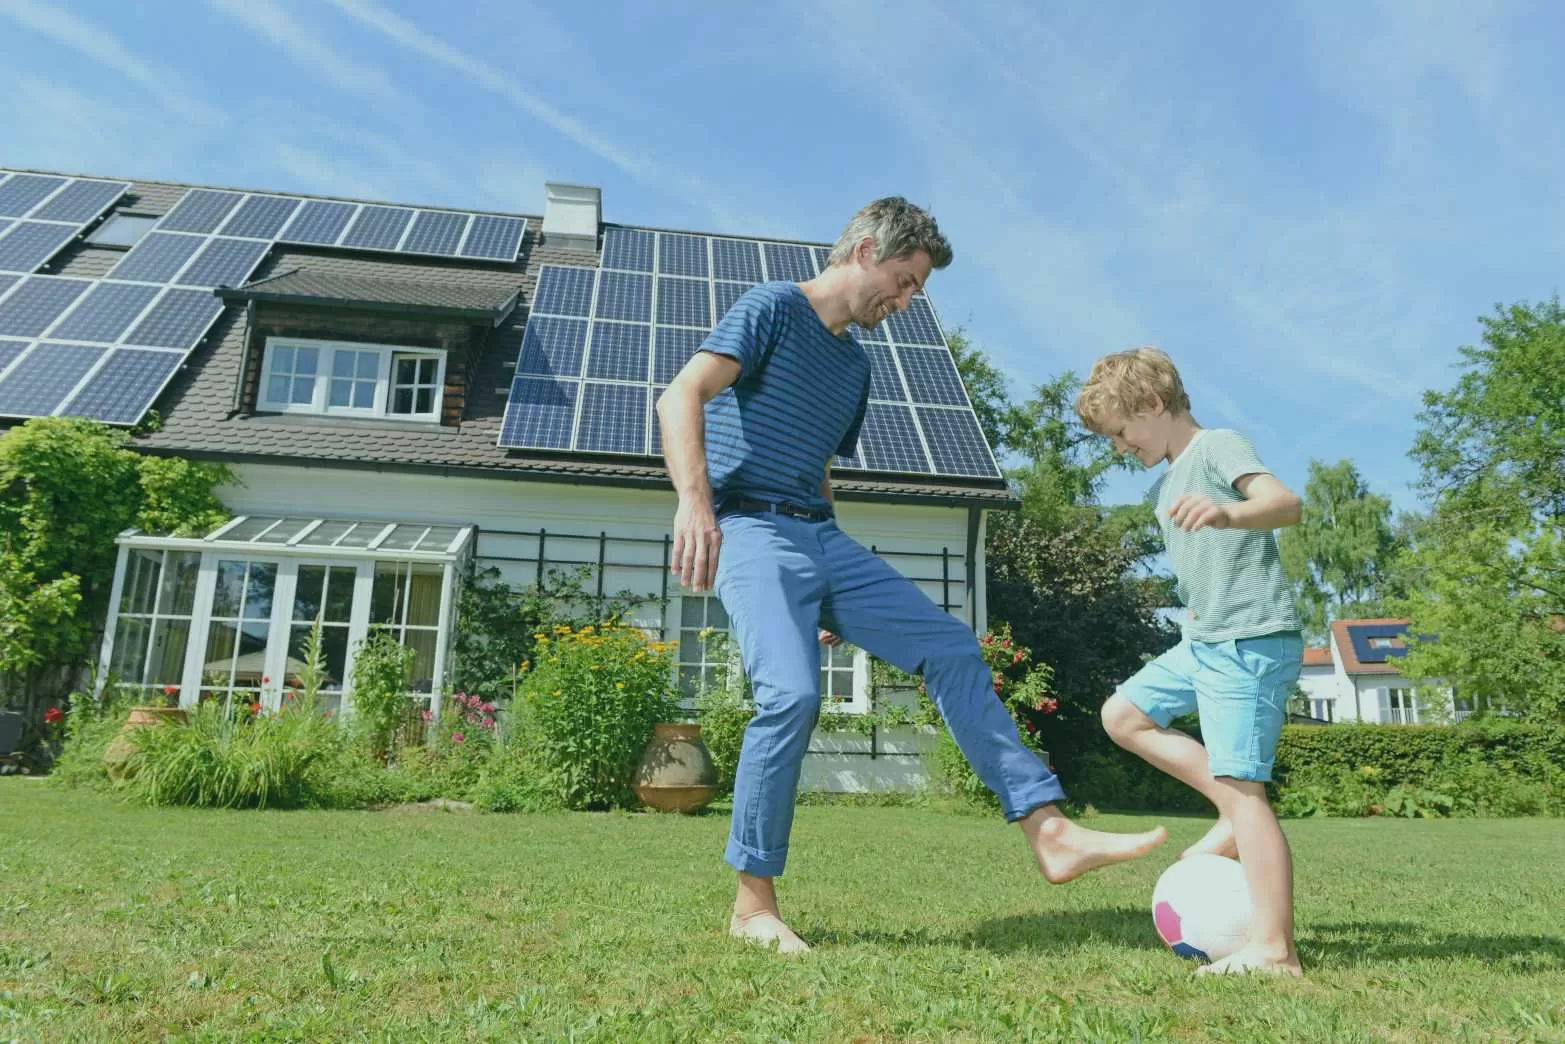 maison autonome avec panneaux solaires alimentez votre habitation grace a l energie solaire.webp